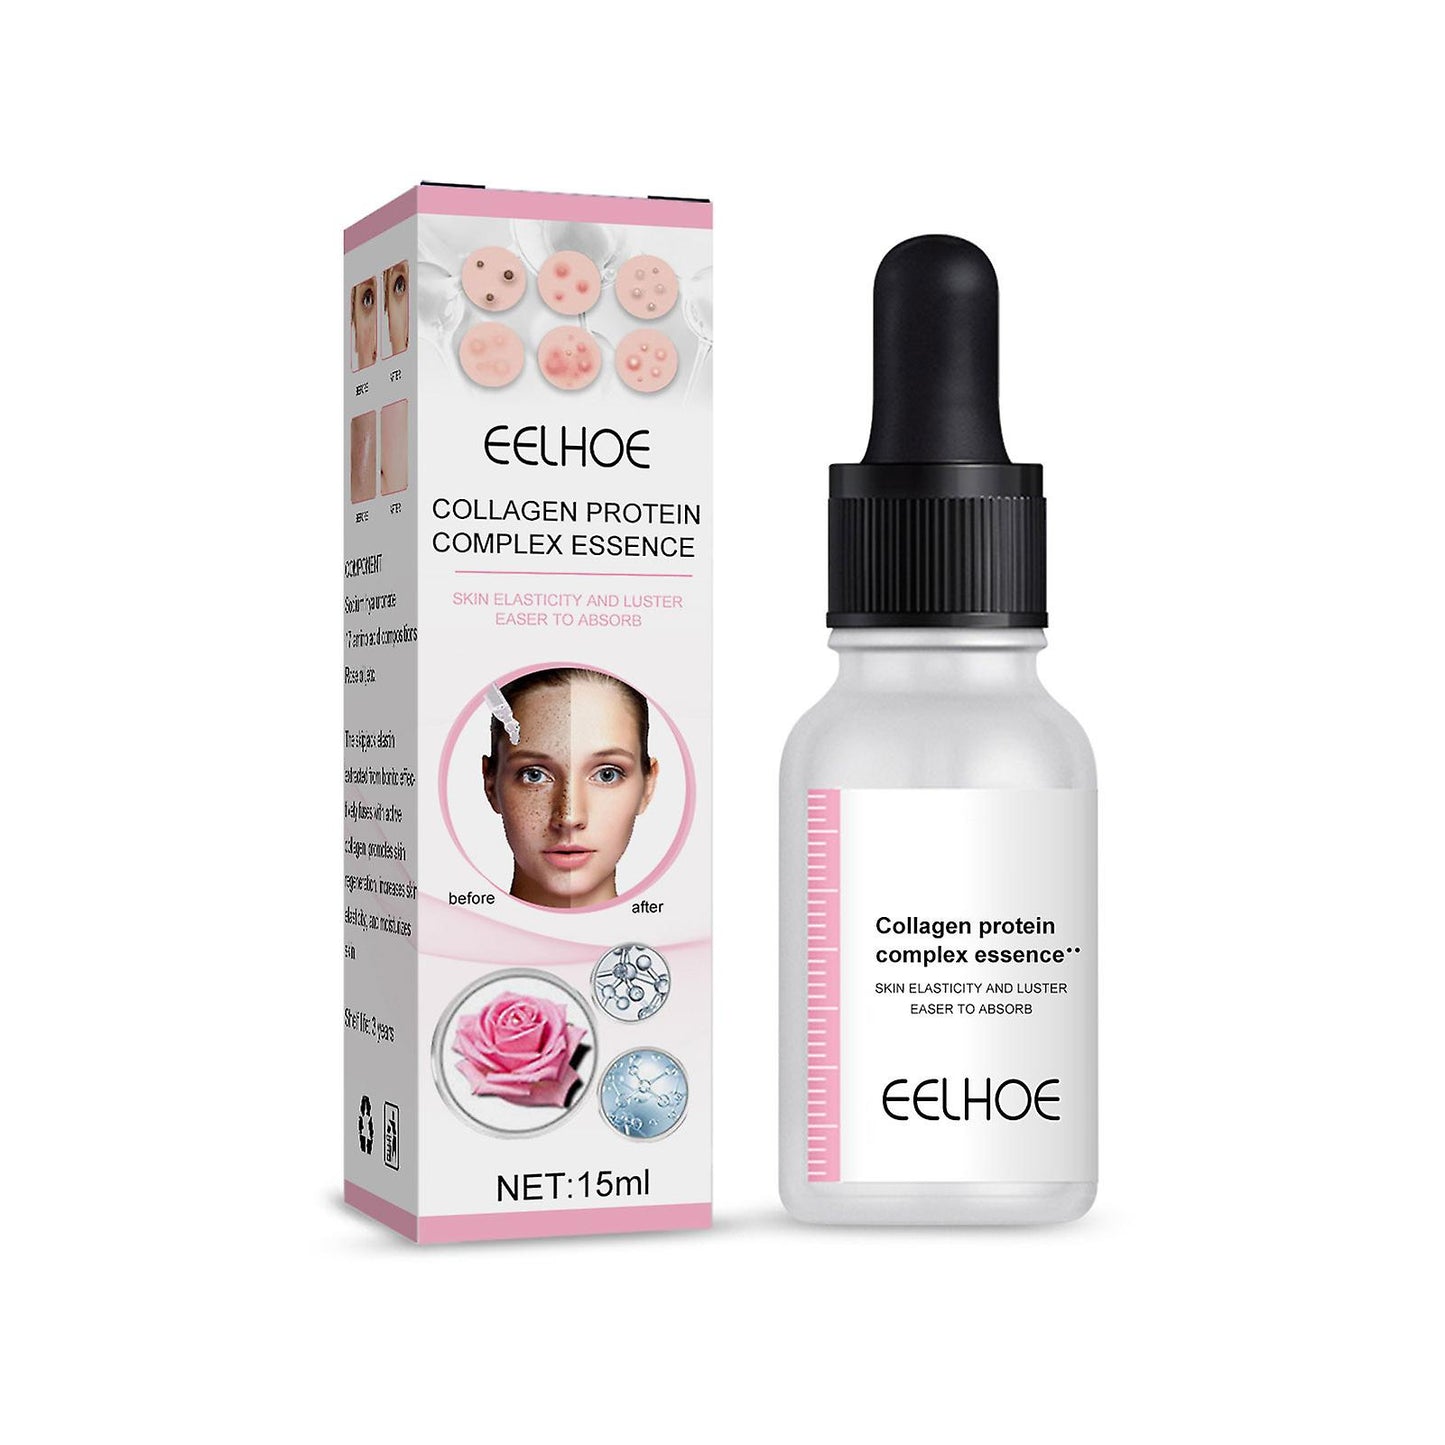 La Roche Posay Effaclar Serum Ultra Concentrado 30 ml + Serum Antiarrugas Facial Complex Essence Eelhoe